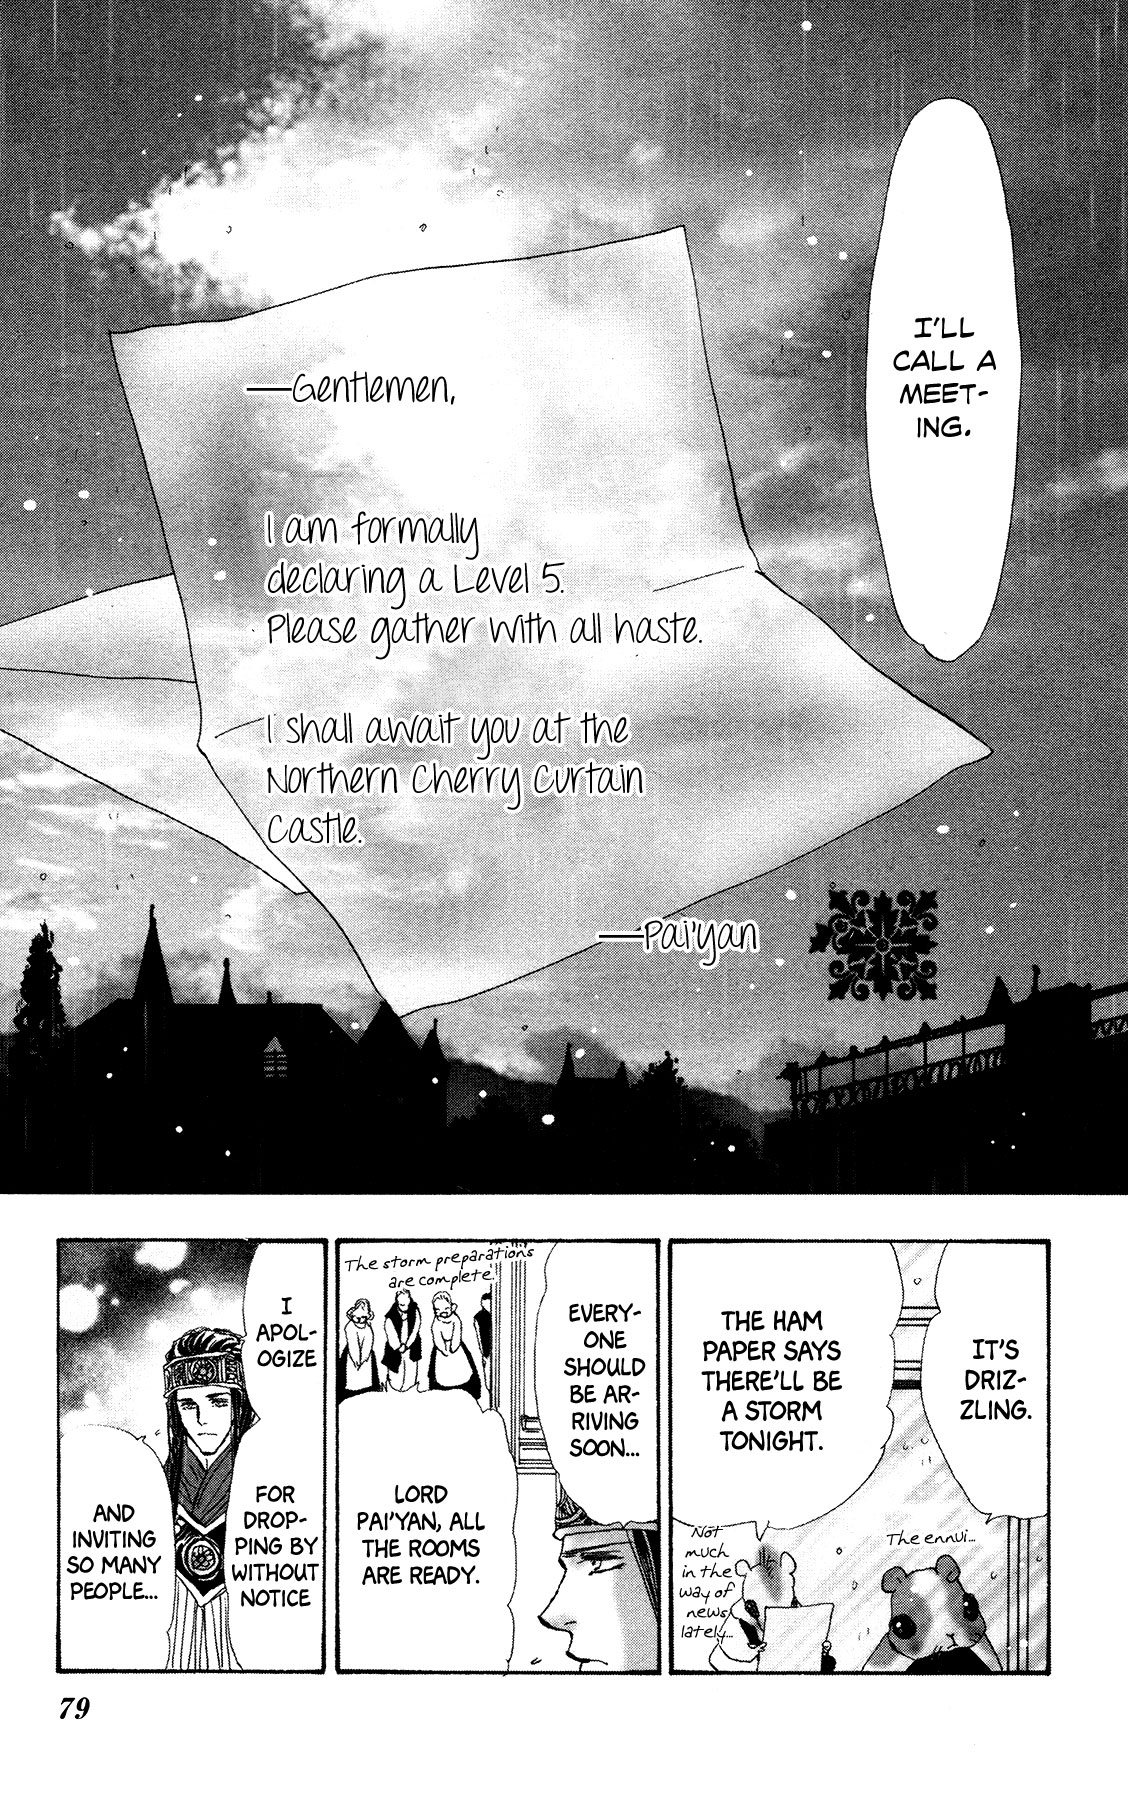 Neko Mix Genkitan Toraji Vol. 5 Ch. 16 The Hero, the Hero, and the Pauper Mouse